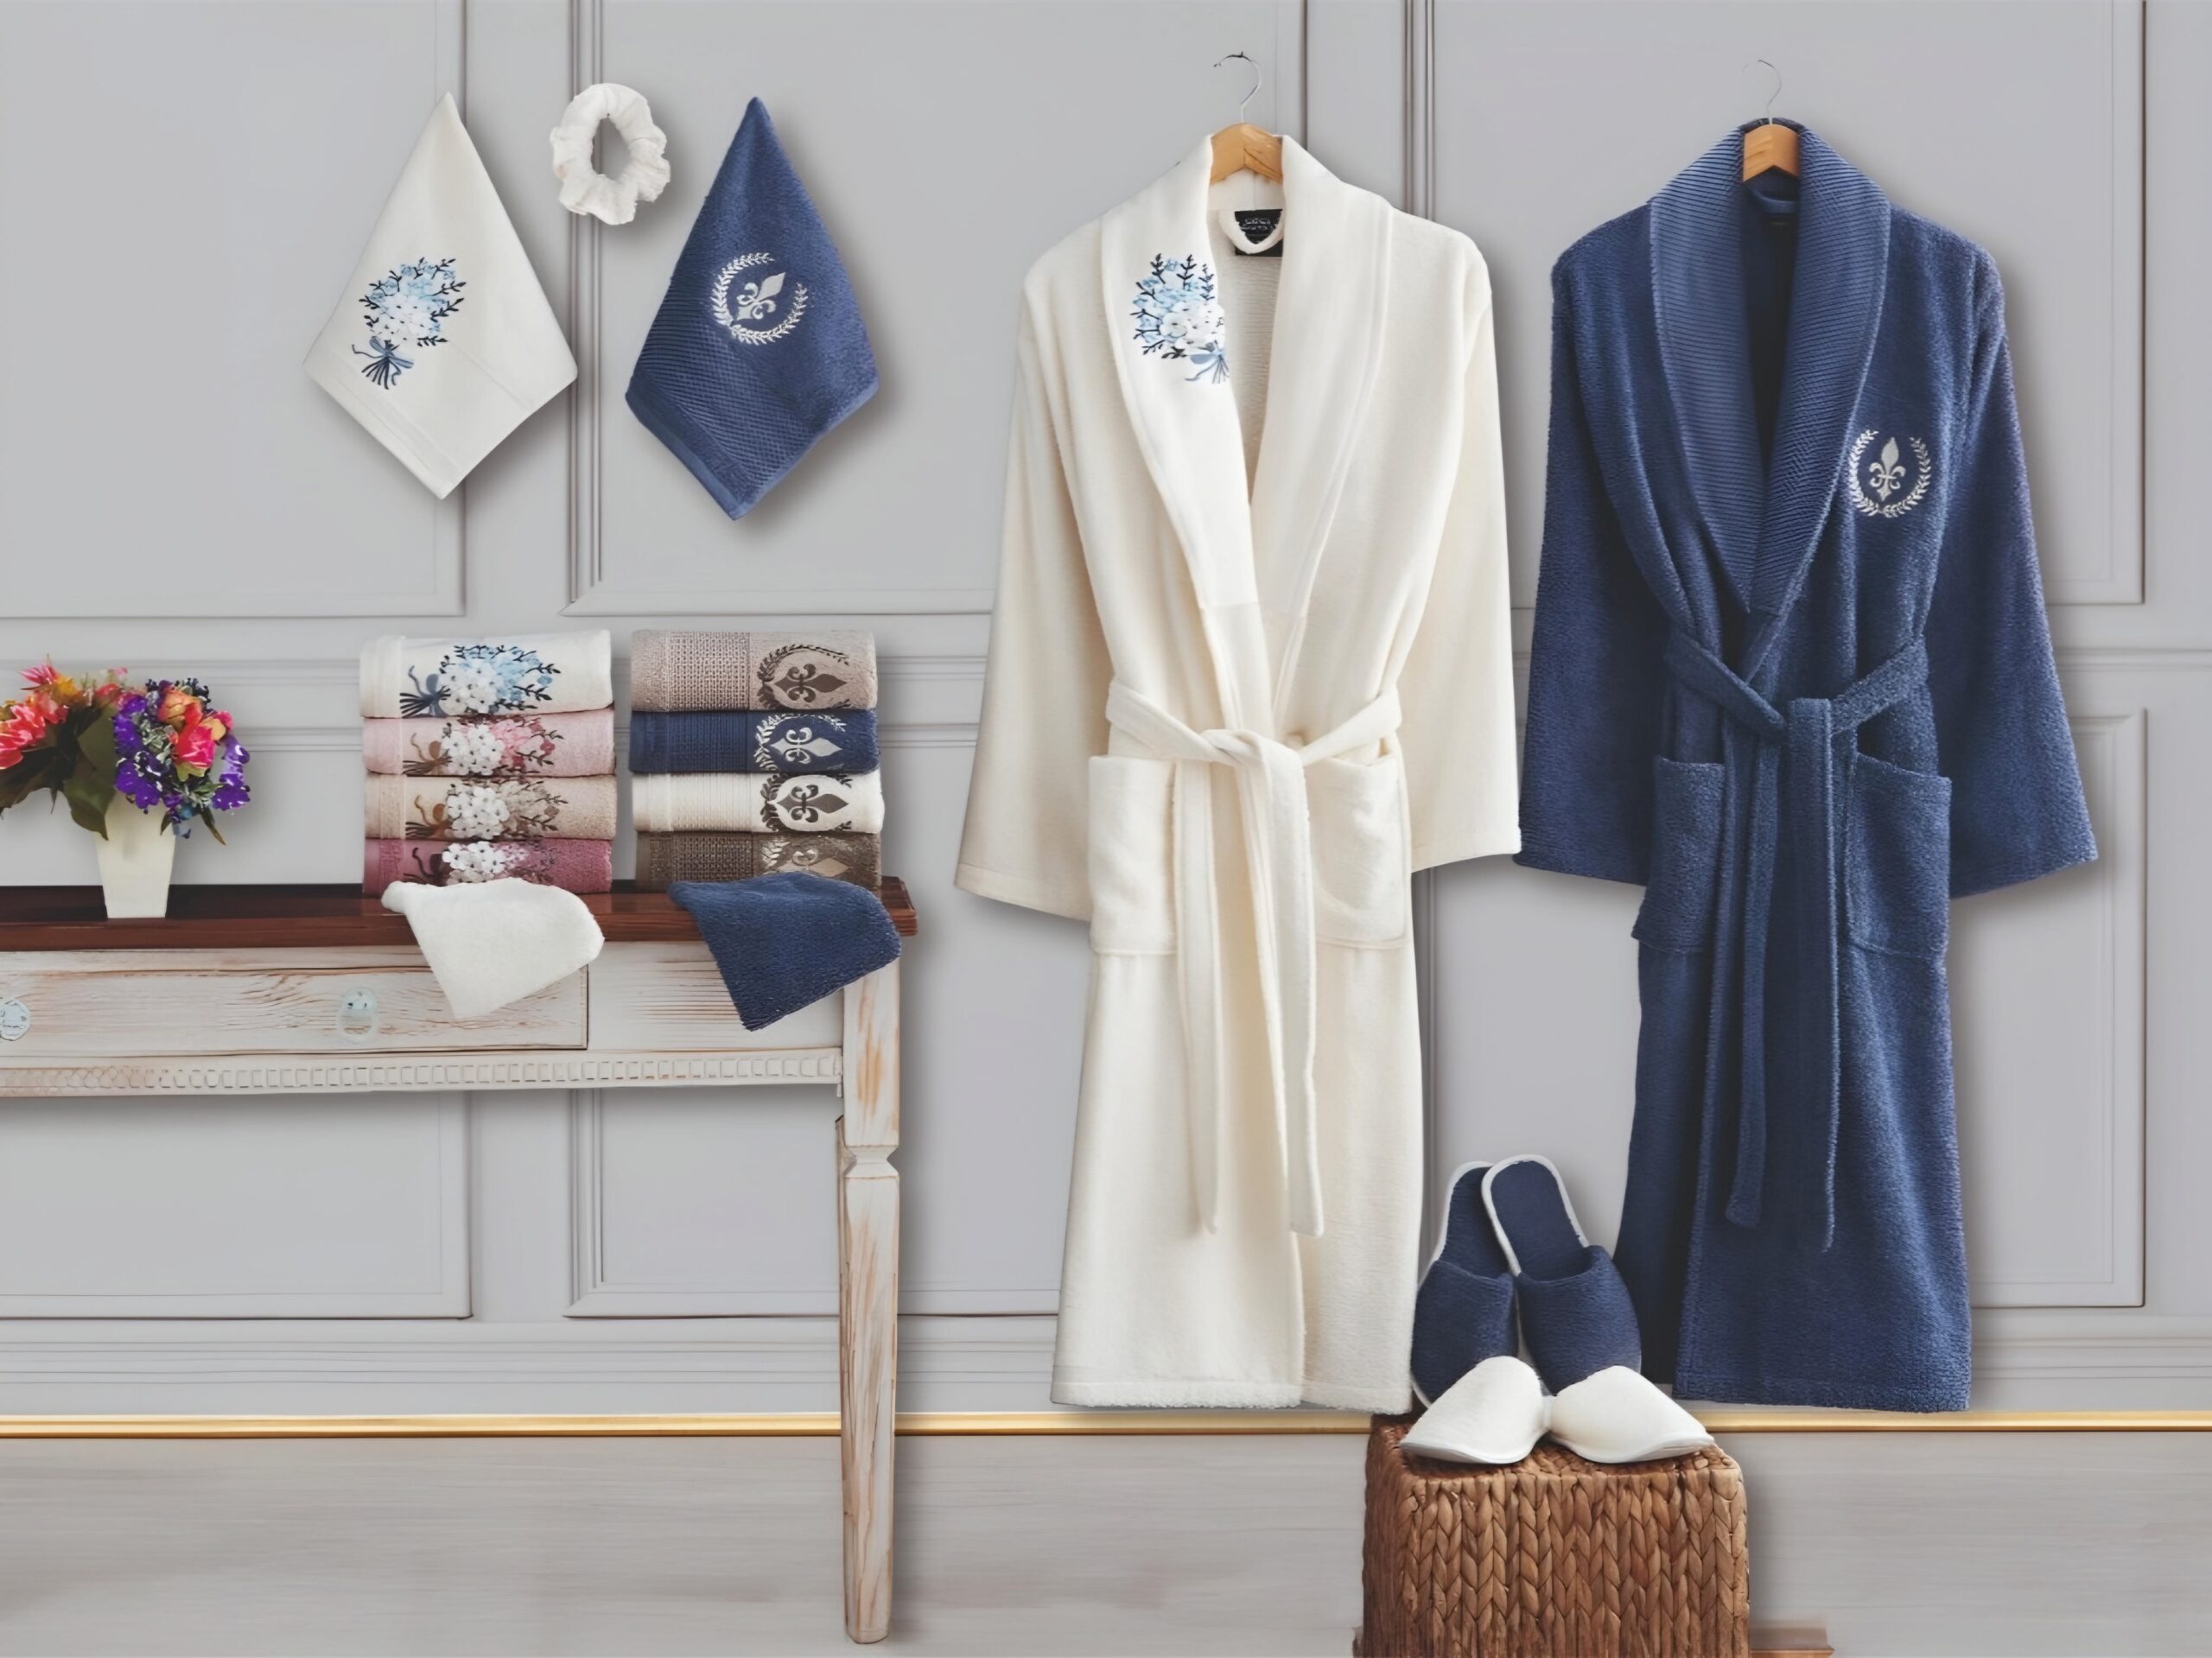 Luxe Katoenen Badjasset en Handdoekenset in Elegante Huiselijke Sfeer Cotton bathrobe set